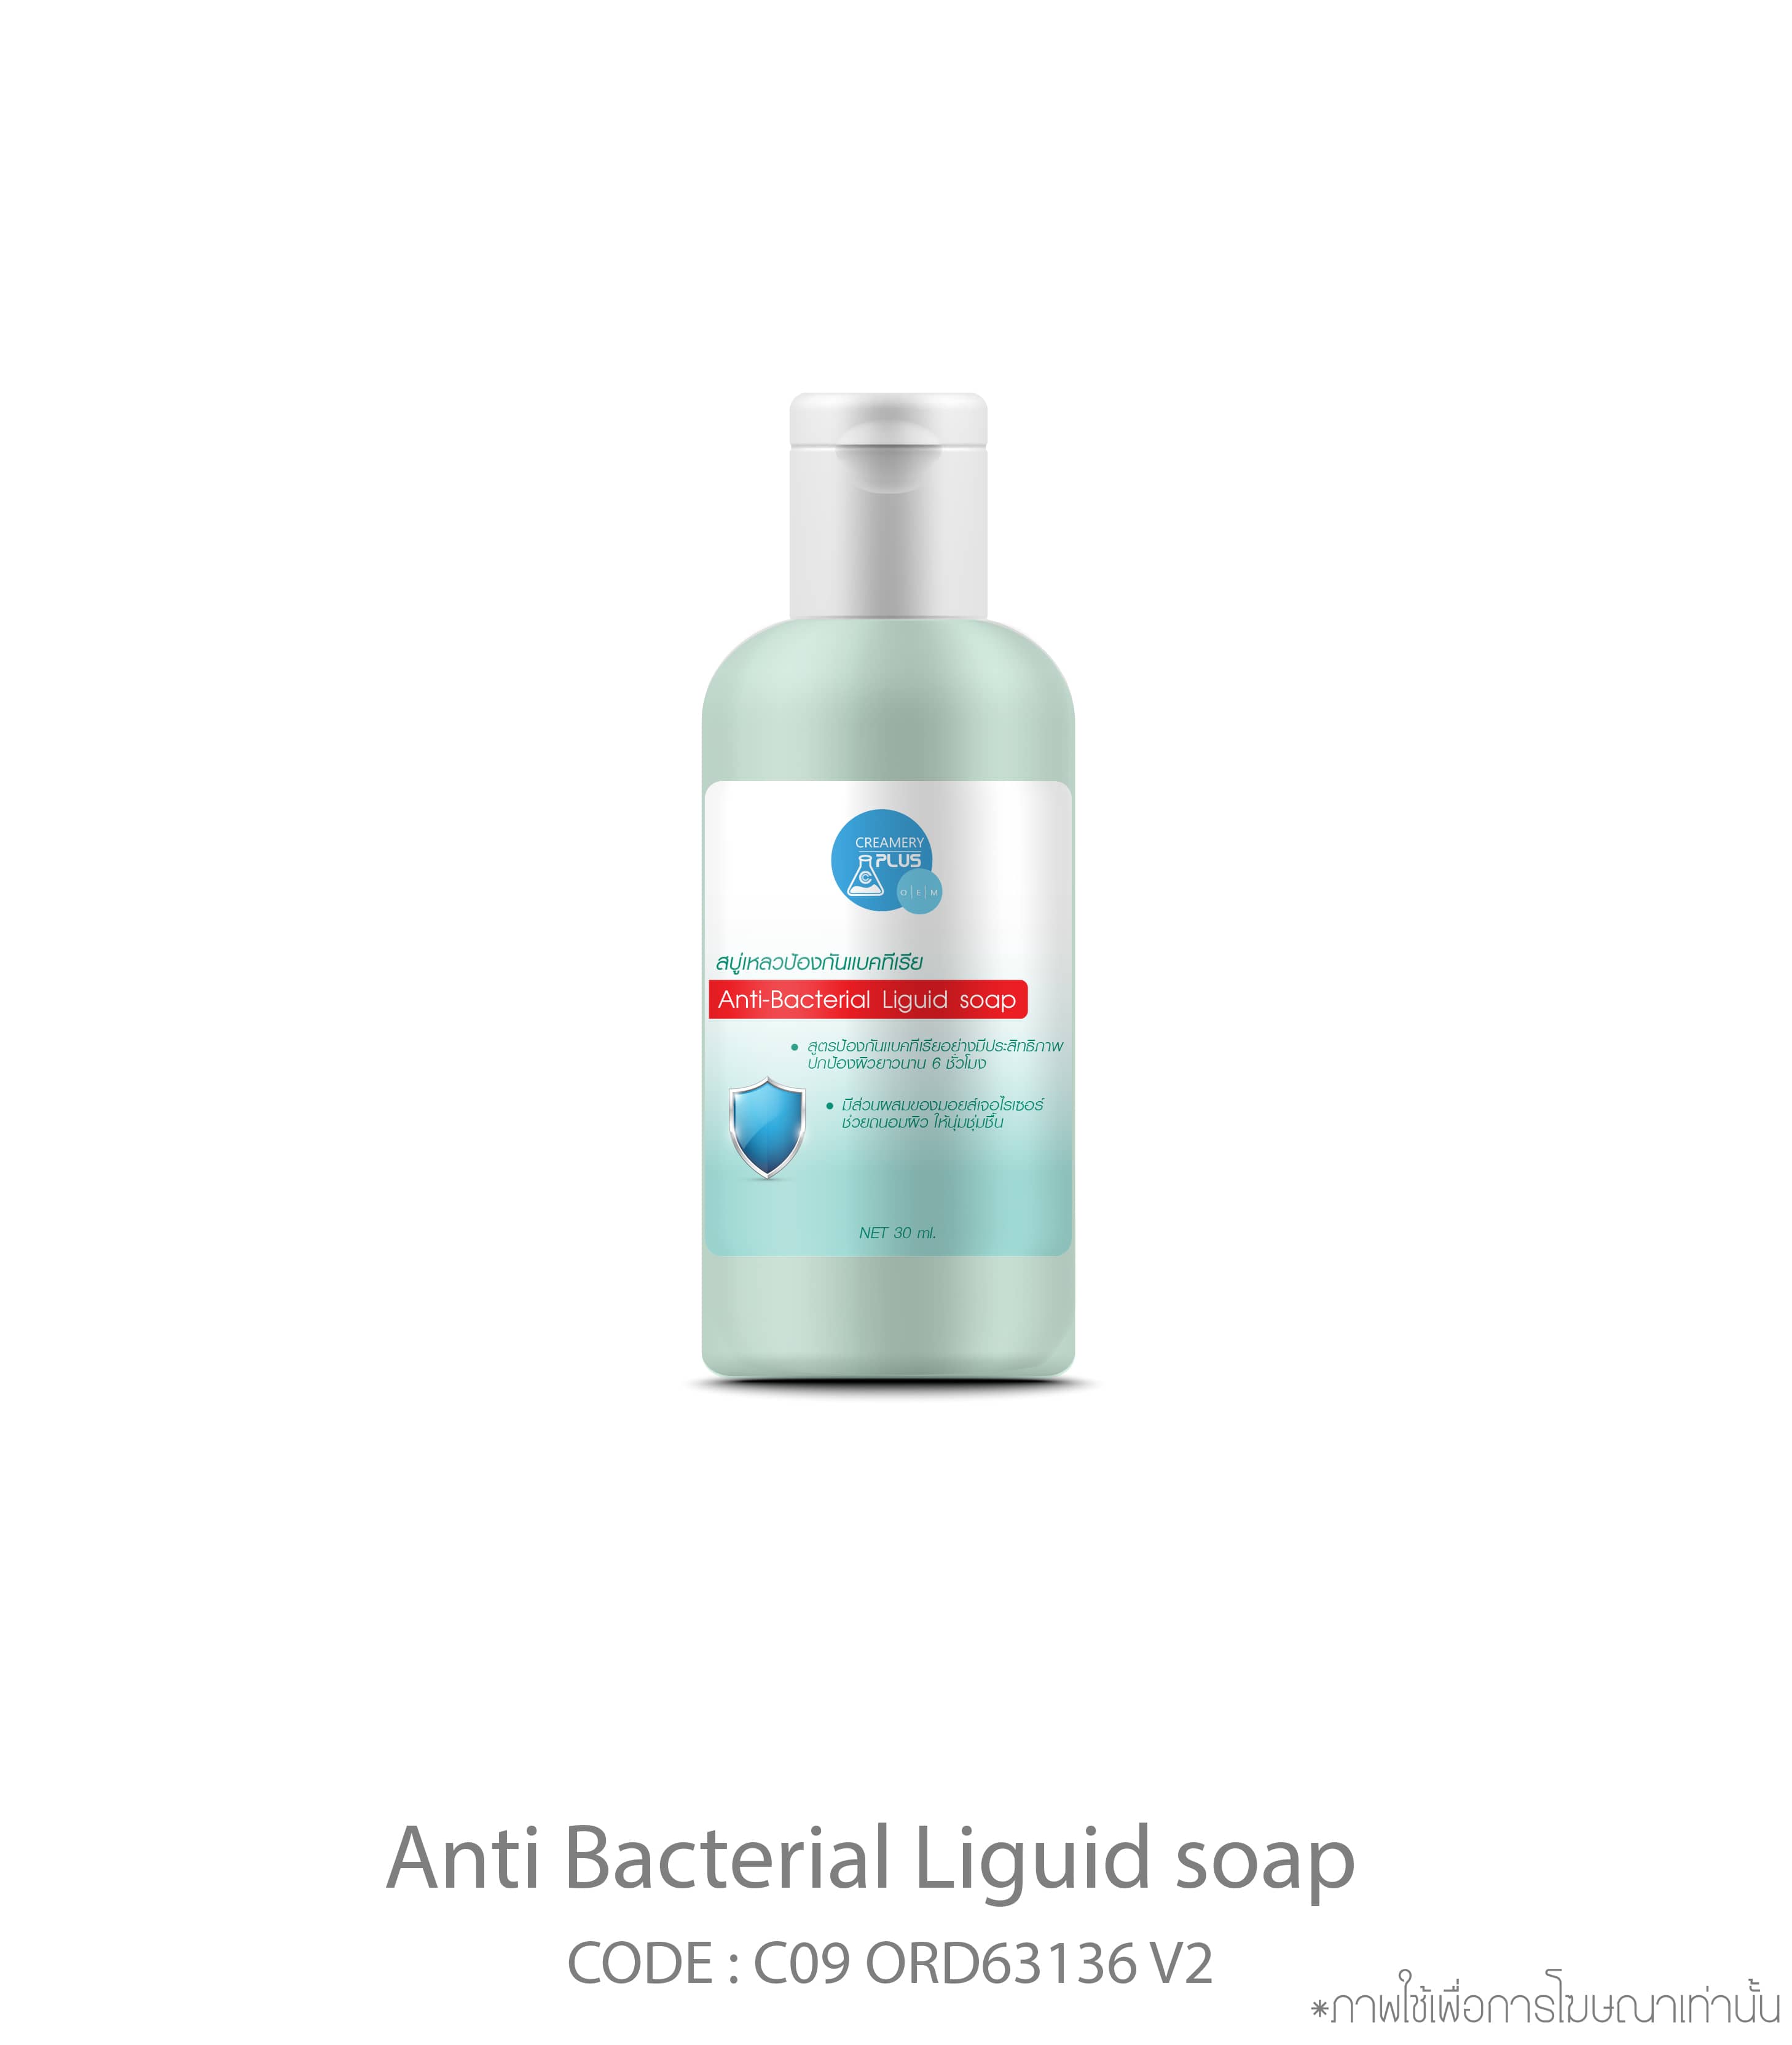 Anti-Bacterial Liquid Soap